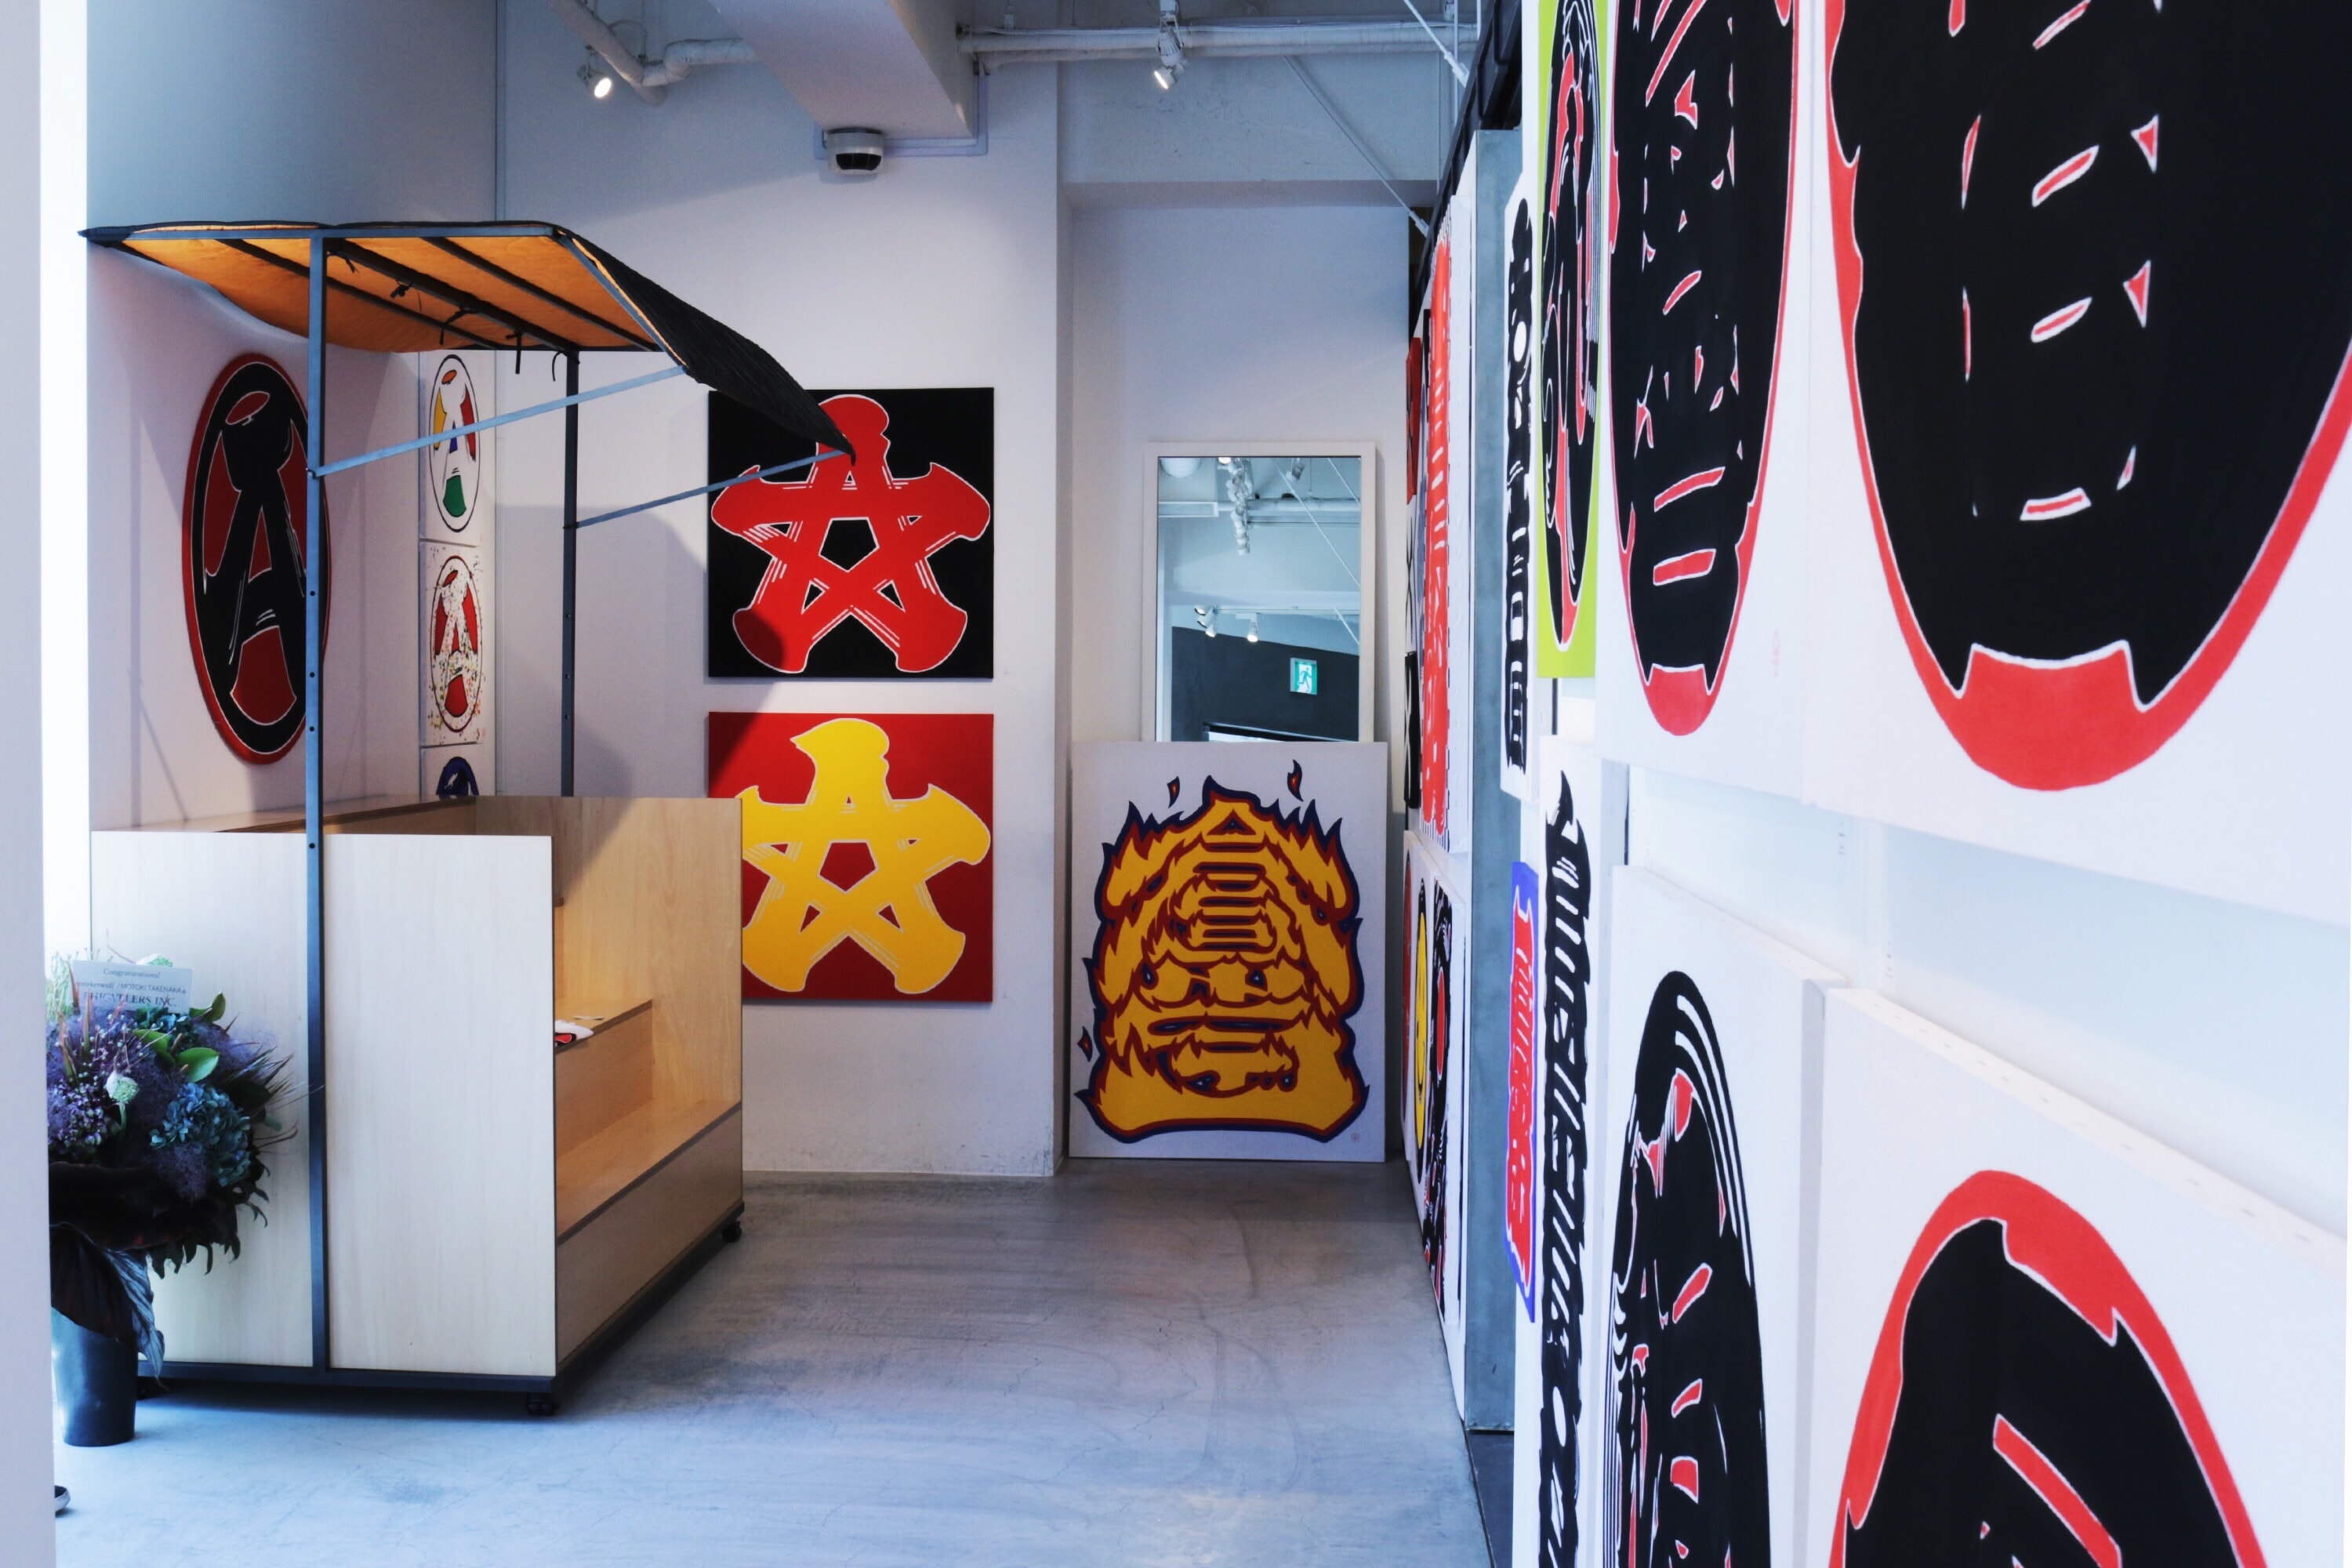 ストリートの重鎮たちも注目する Sneakerwolf Kanji-Graphy ART Exhibition “A” の内側を公開